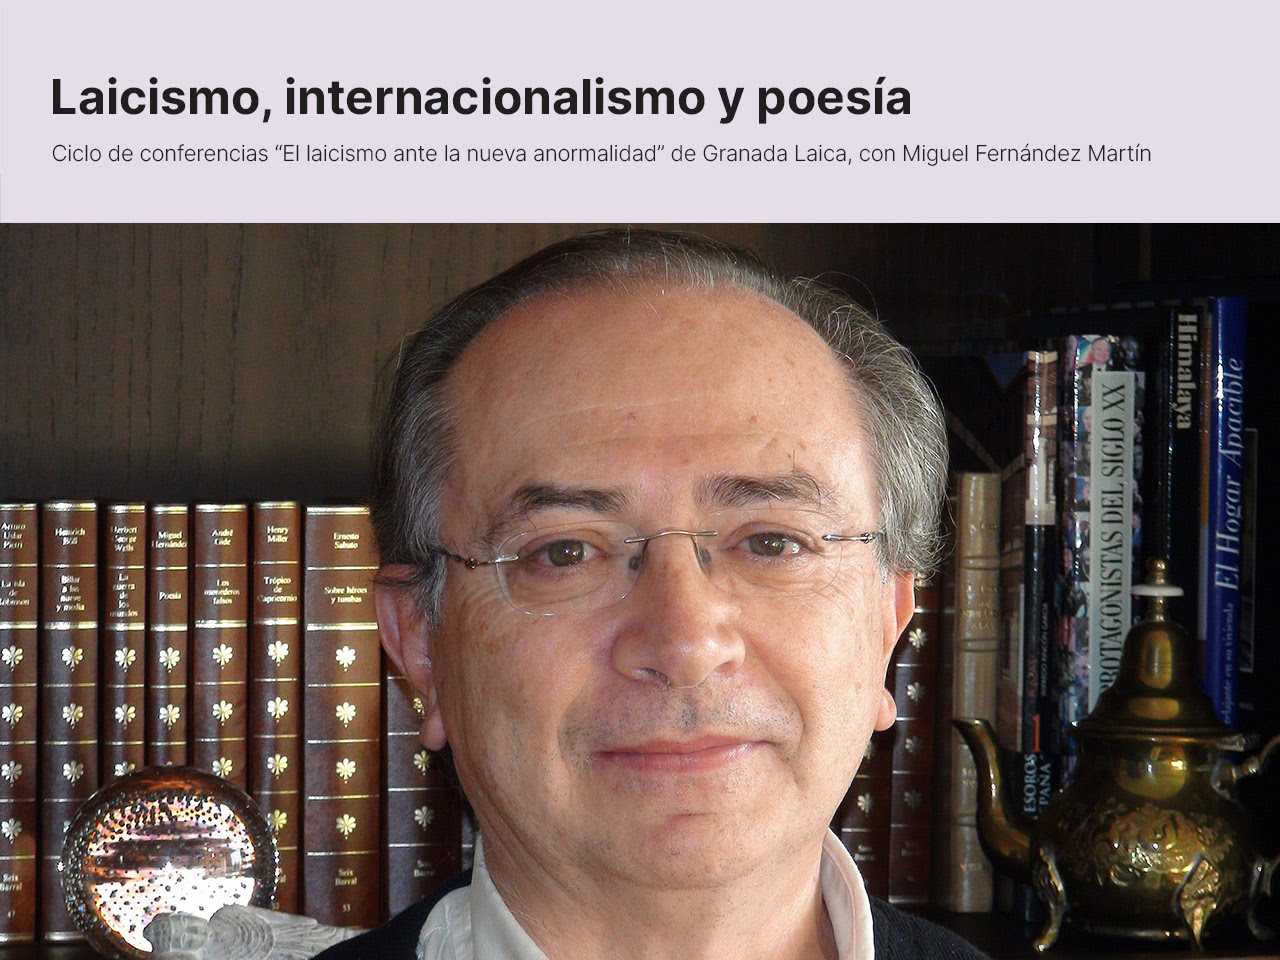 Este jueves 2 de junio, Granada Laica continúa su ciclo de conferencias con la ponencia ＂Laicismo, internacionalismo y poesía＂ a cargo del poeta Miguel Fernández Martín